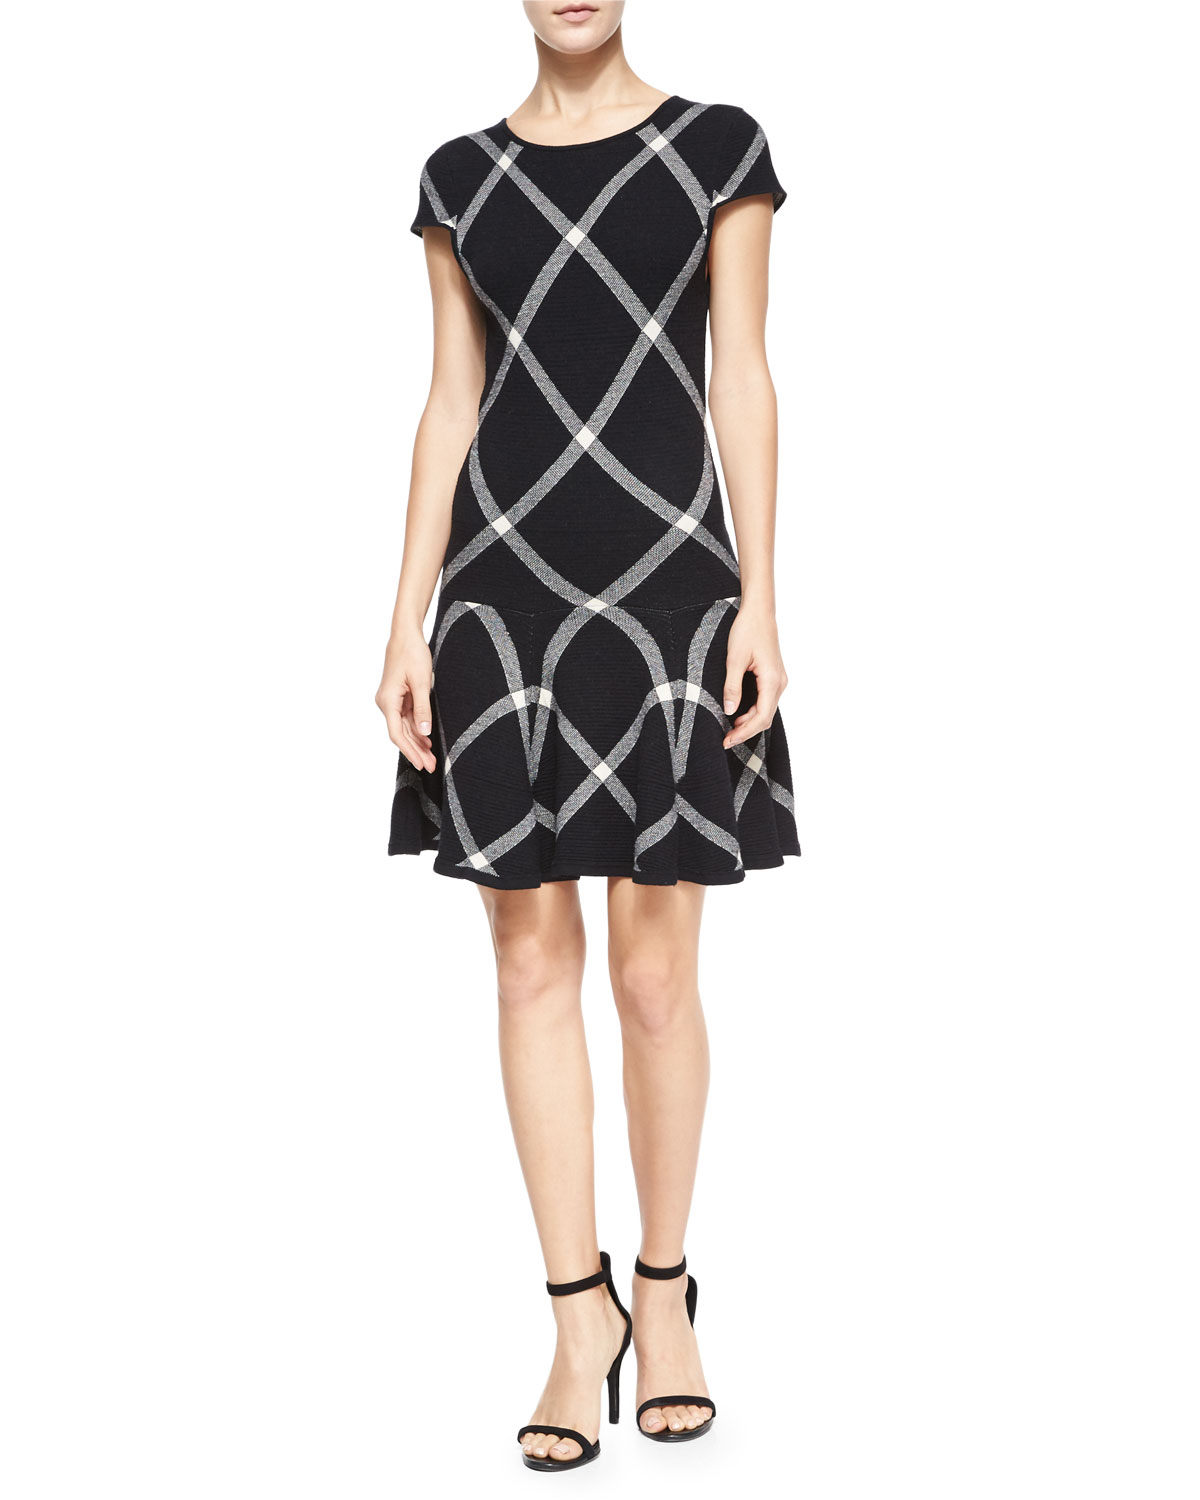 Alice + olivia Diagonal Plaid Drop-waist Dress in Black | Lyst